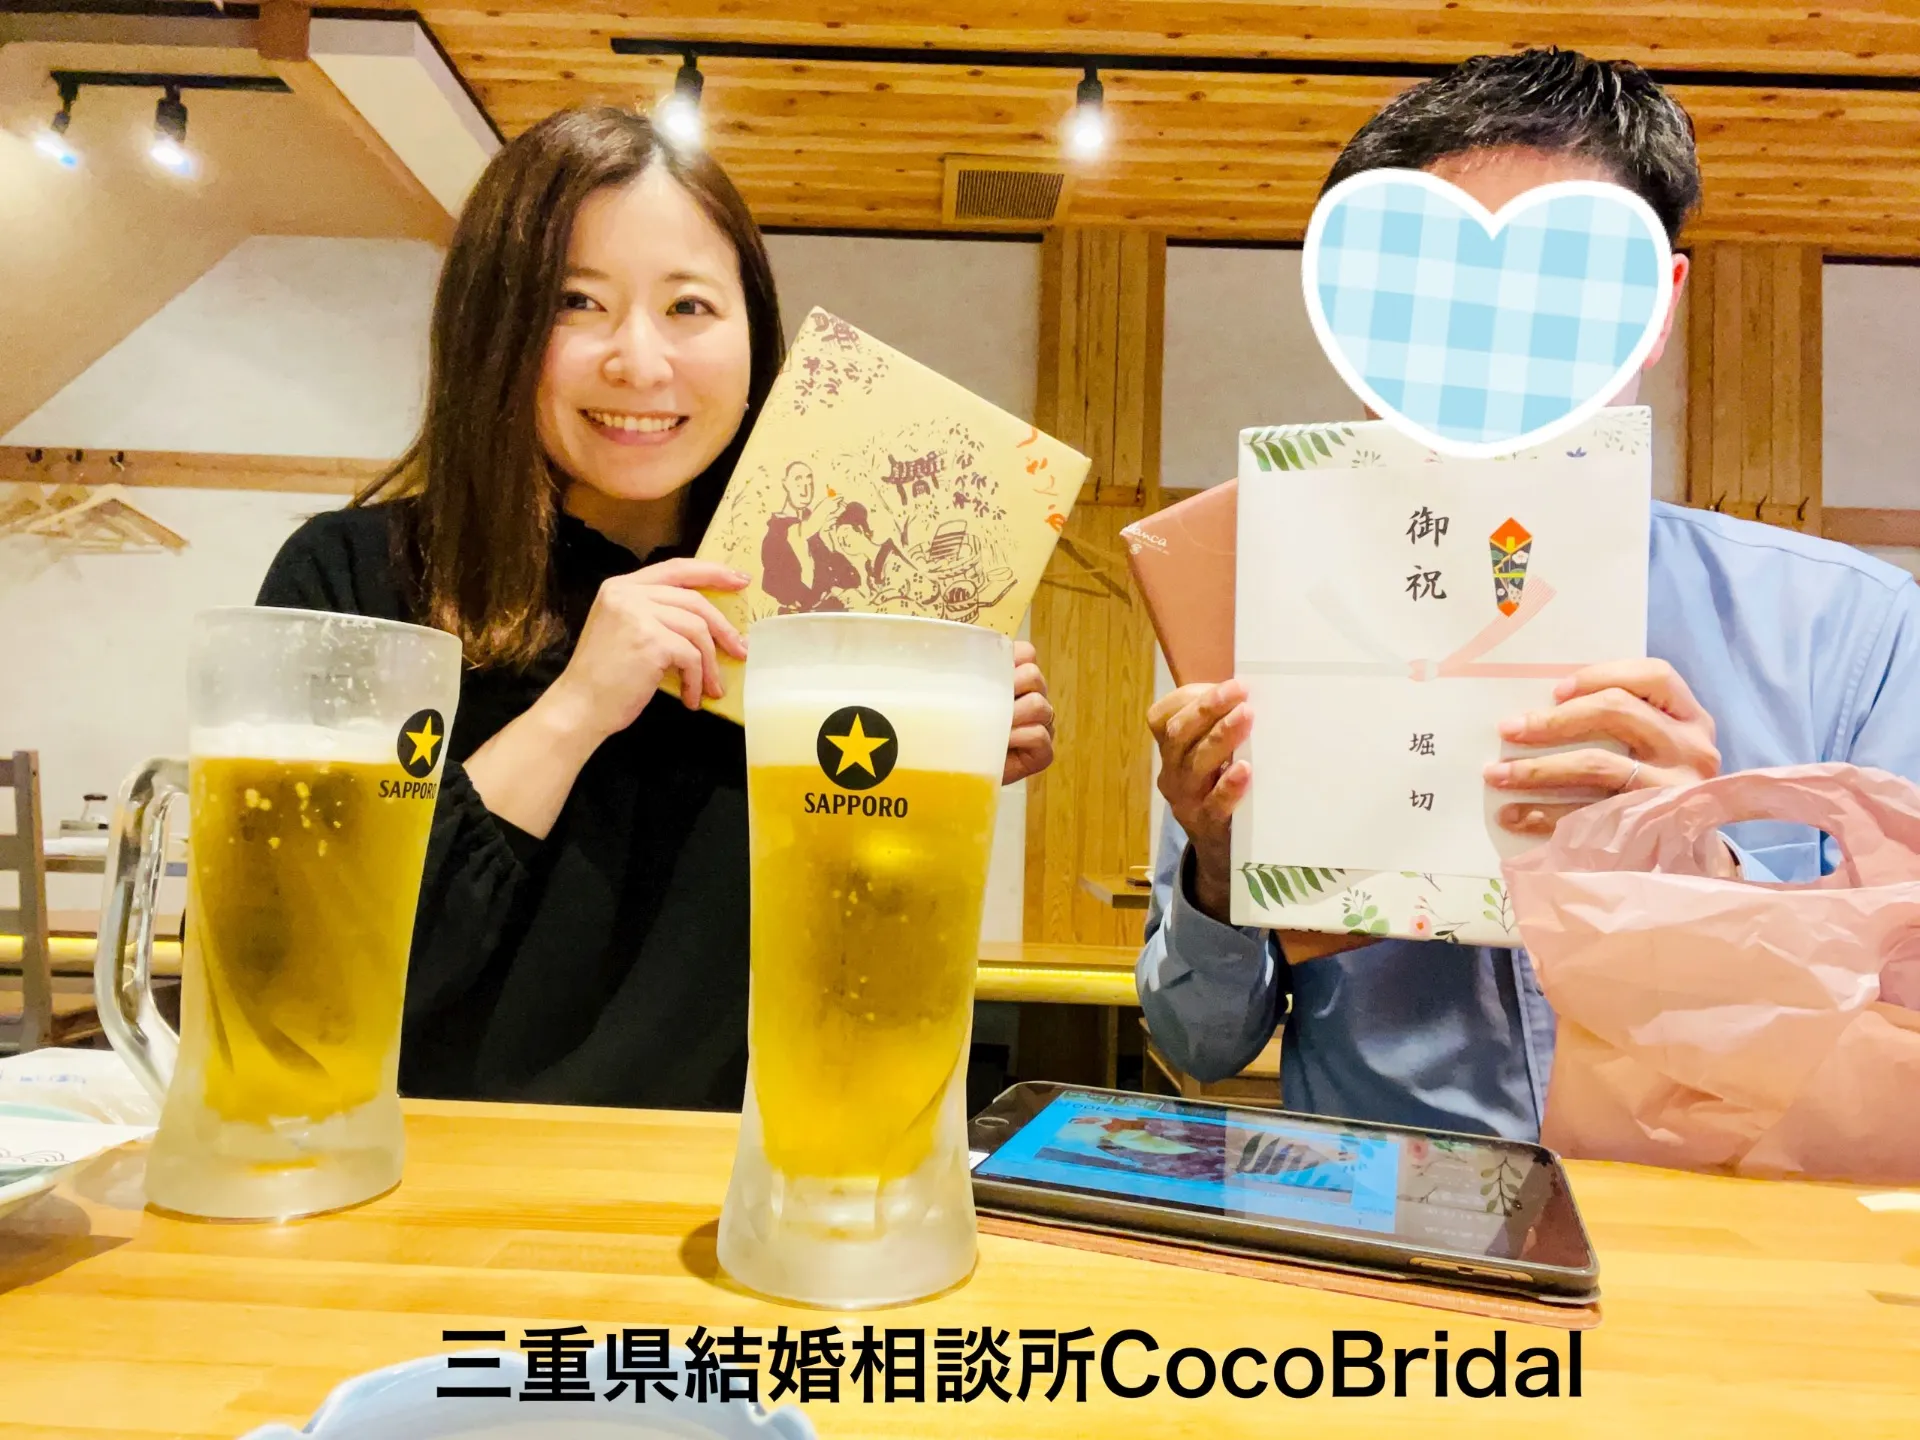 30代男性のご成婚のお祝いをさせていただきました🍻三重県結婚相談所CocoBridal